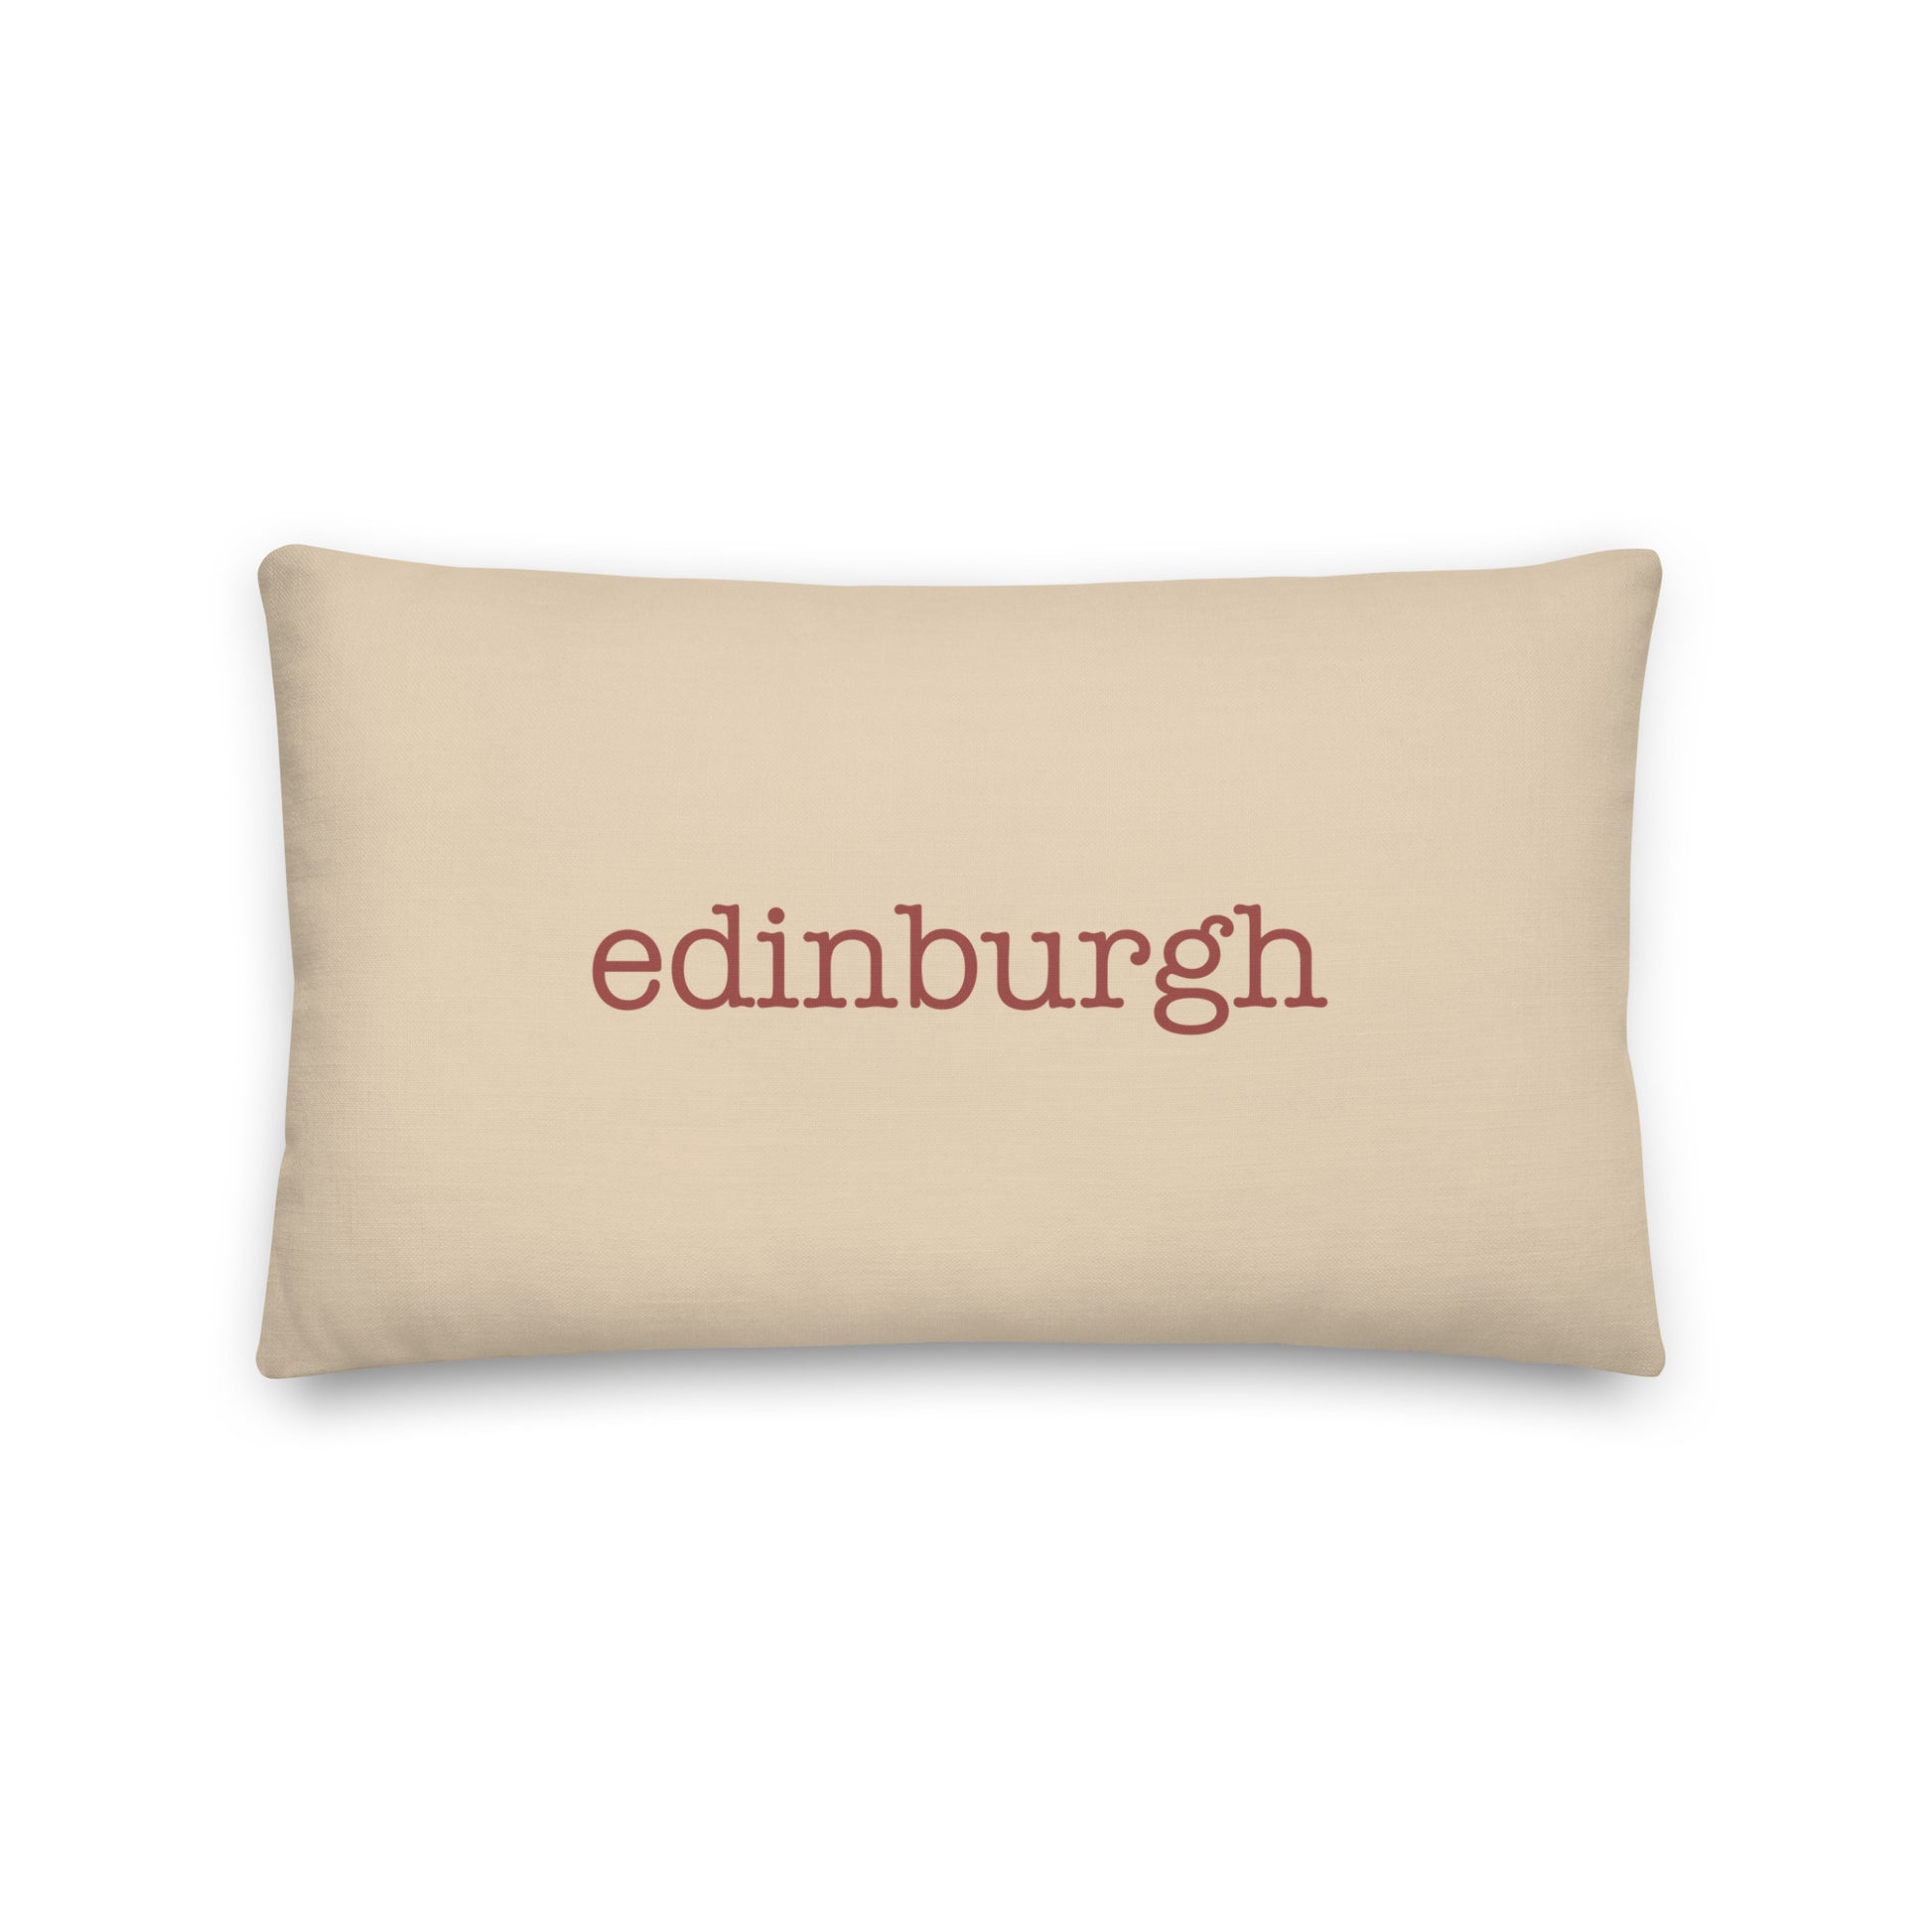 Typewriter Pillow - Terra Cotta • EDI Edinburgh • YHM Designs - Image 01